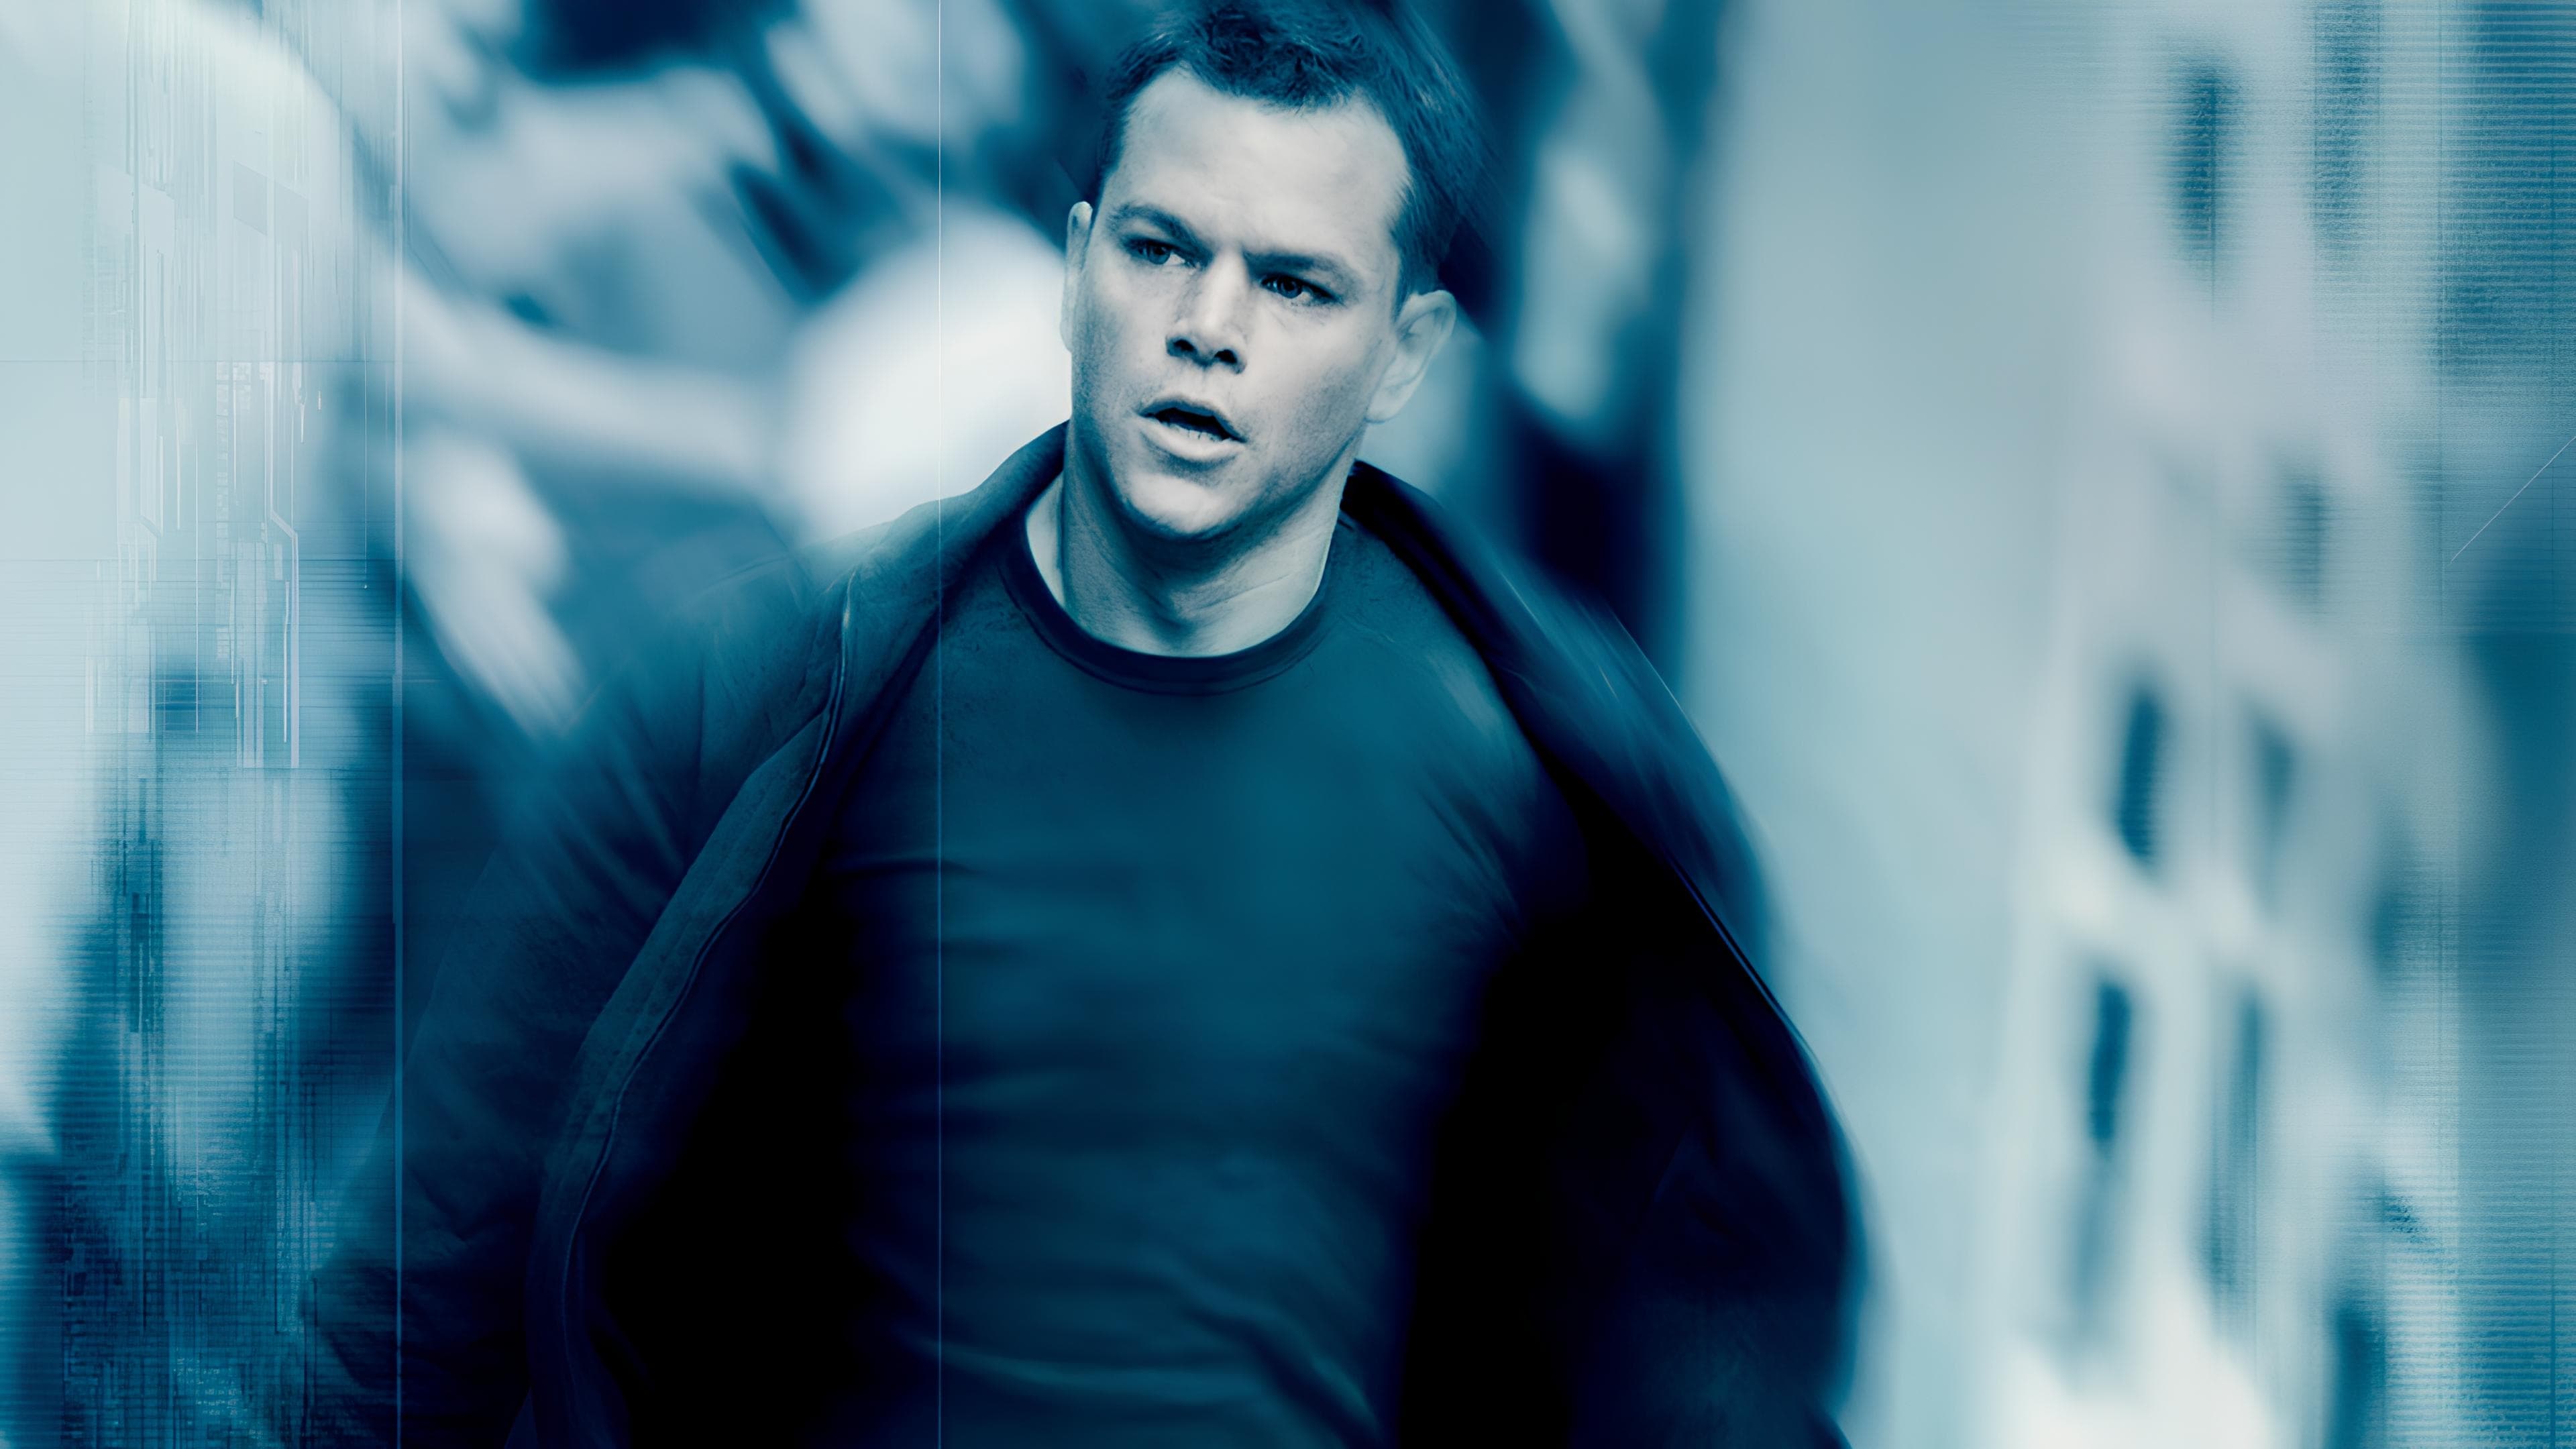 Siêu Điệp Viên: Tối Hậu Thư Của Bourne - The Bourne Ultimatum